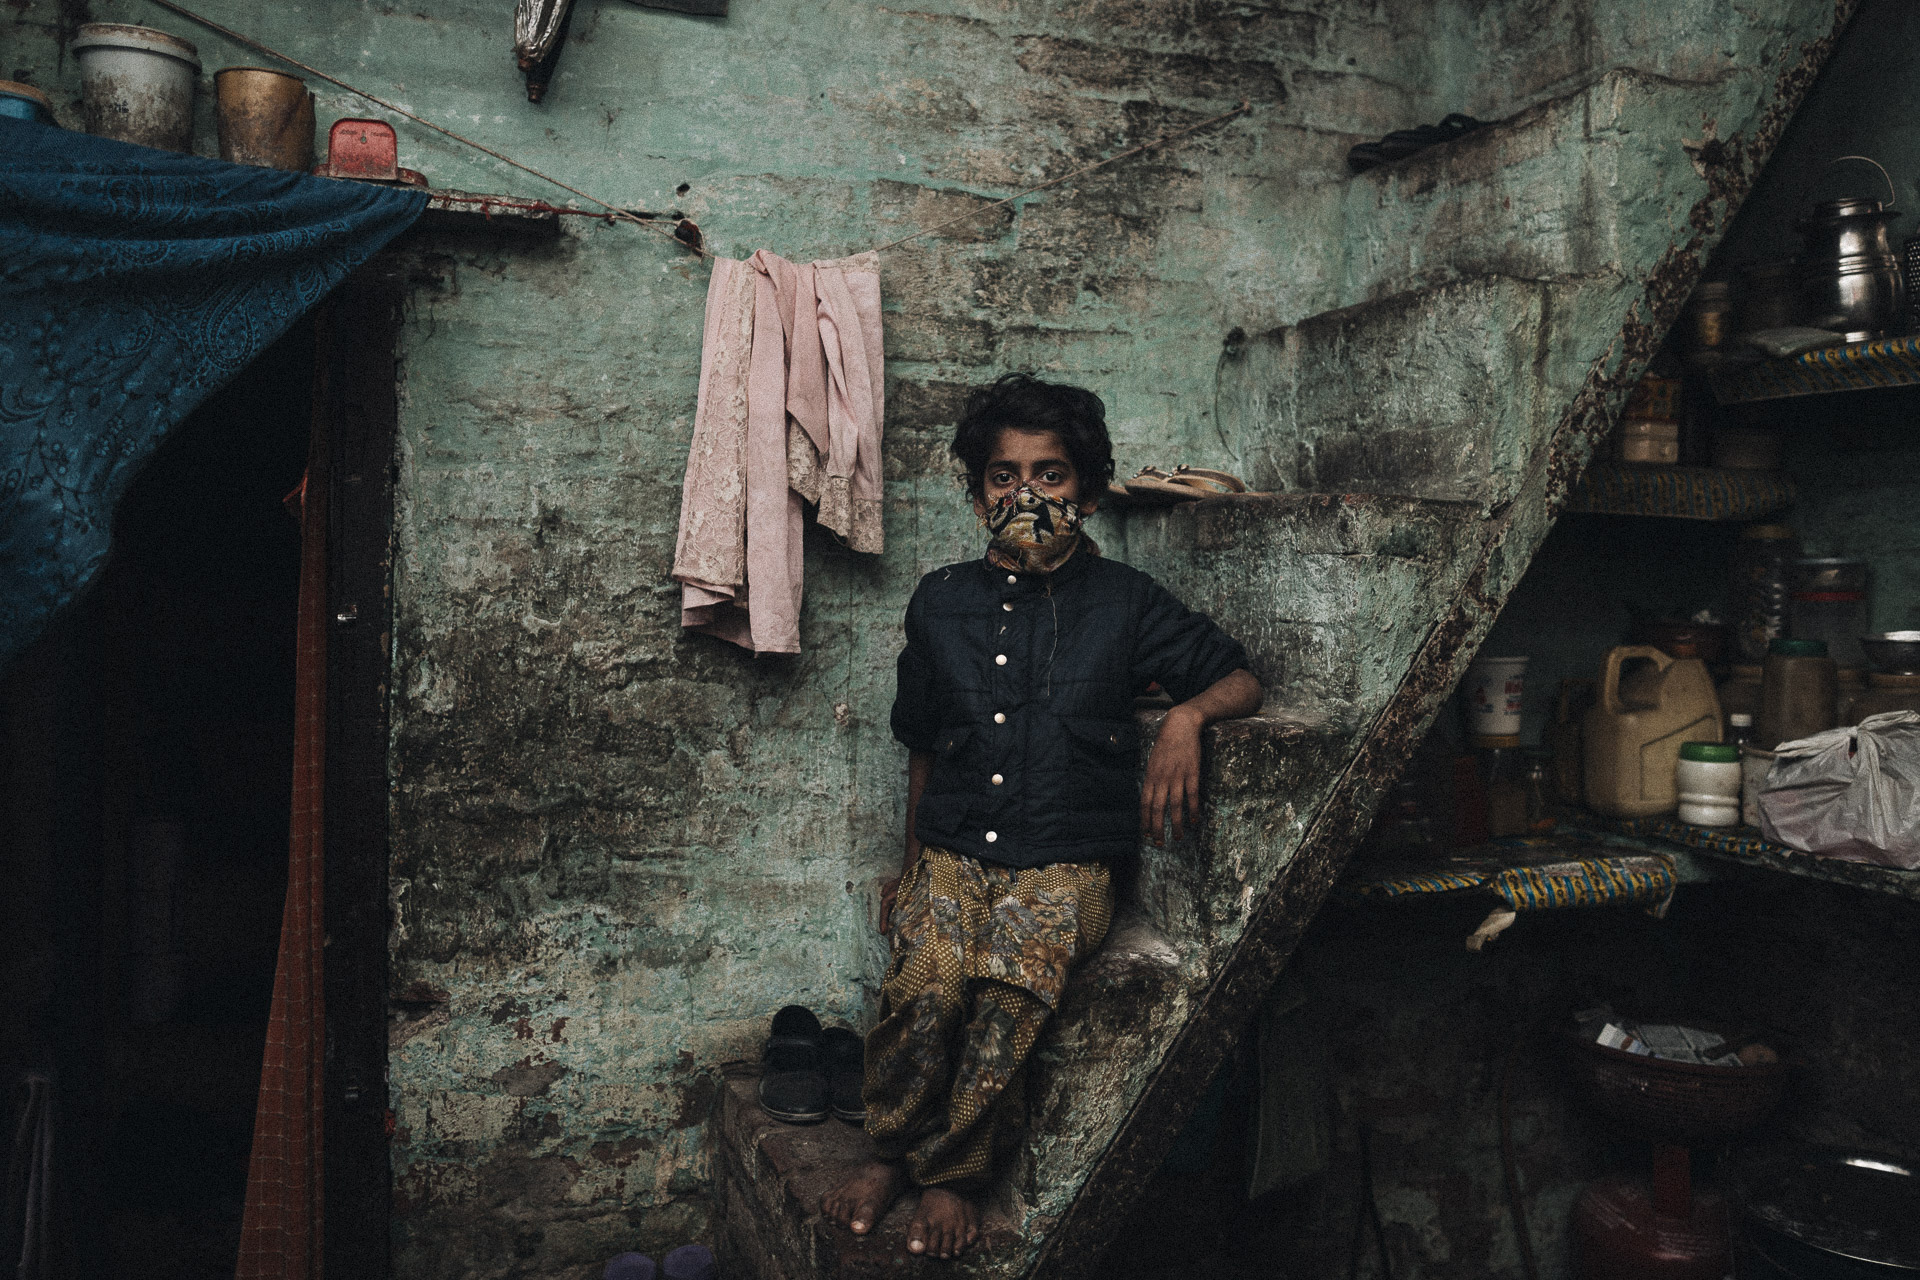 Junge in den Slums von Neu Delhi - Portrait von Fotojournalist Mario Schmitt